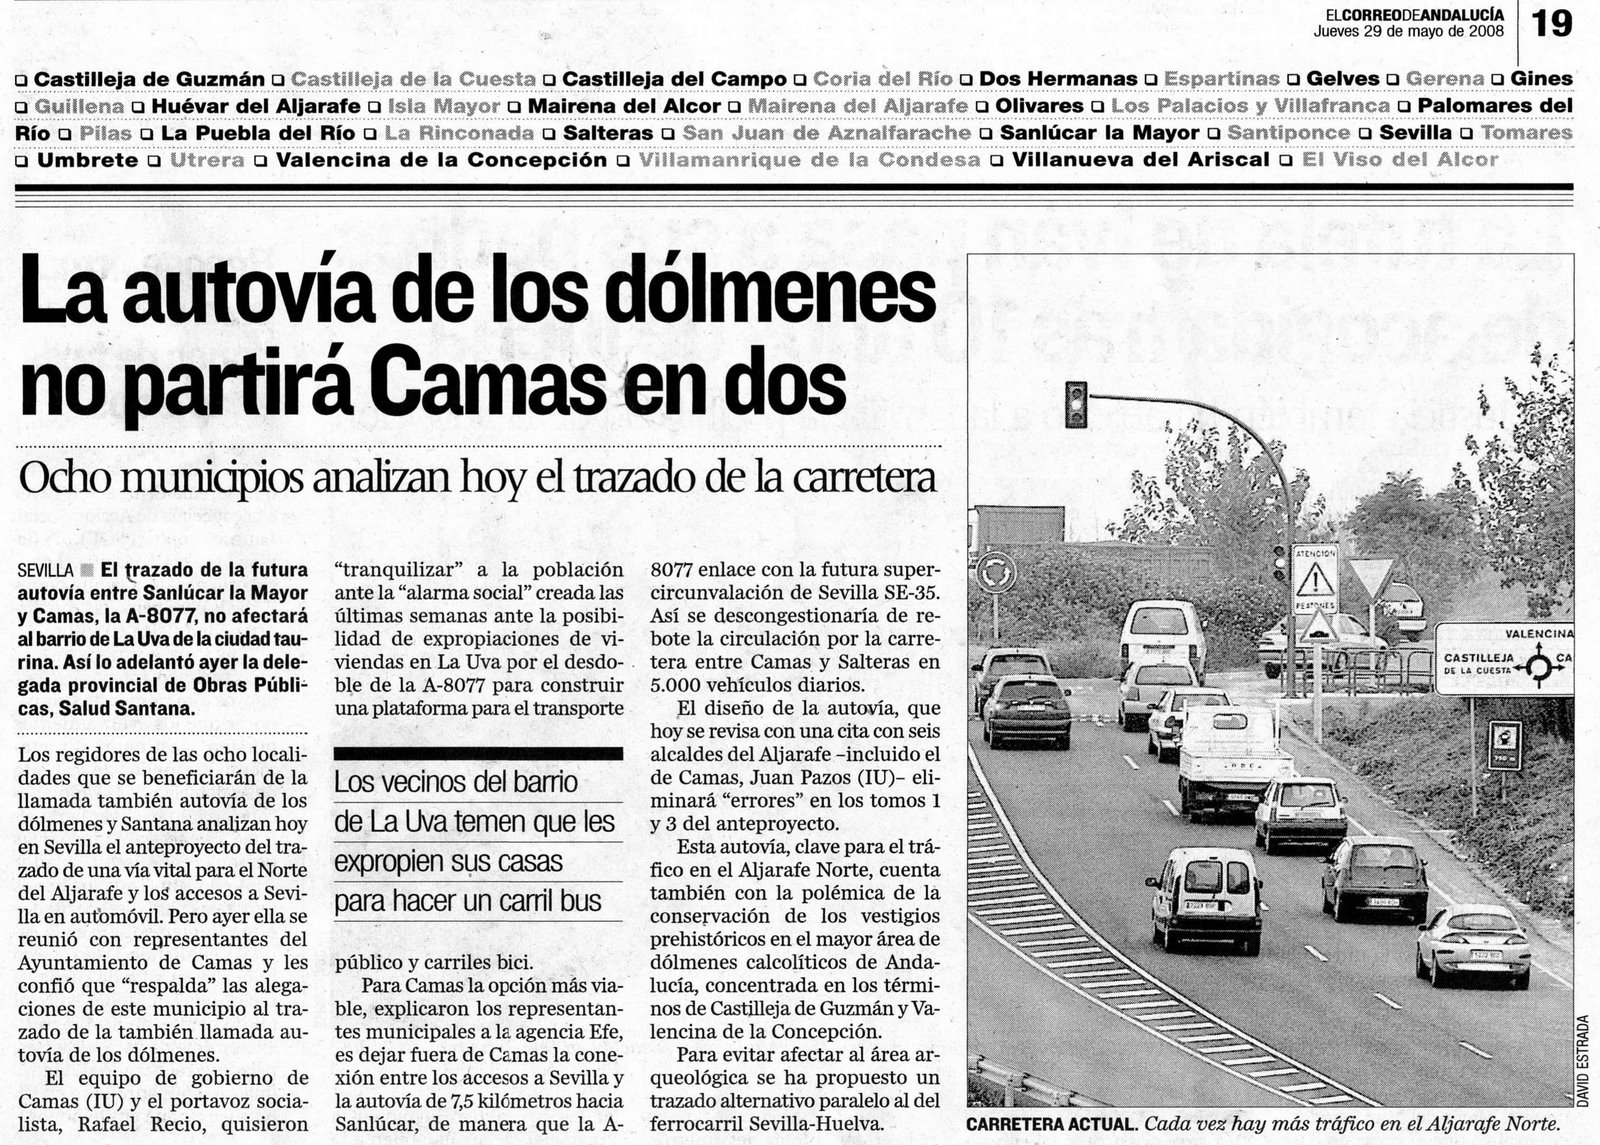 [2008+05+29+CORREO+ANDALUCÃ A+LA+AUTOVÃ A+DE+LOS+DÃ“LMENES+NO+PARTIRÃ +CAMAS+EN+DOS.jpg]